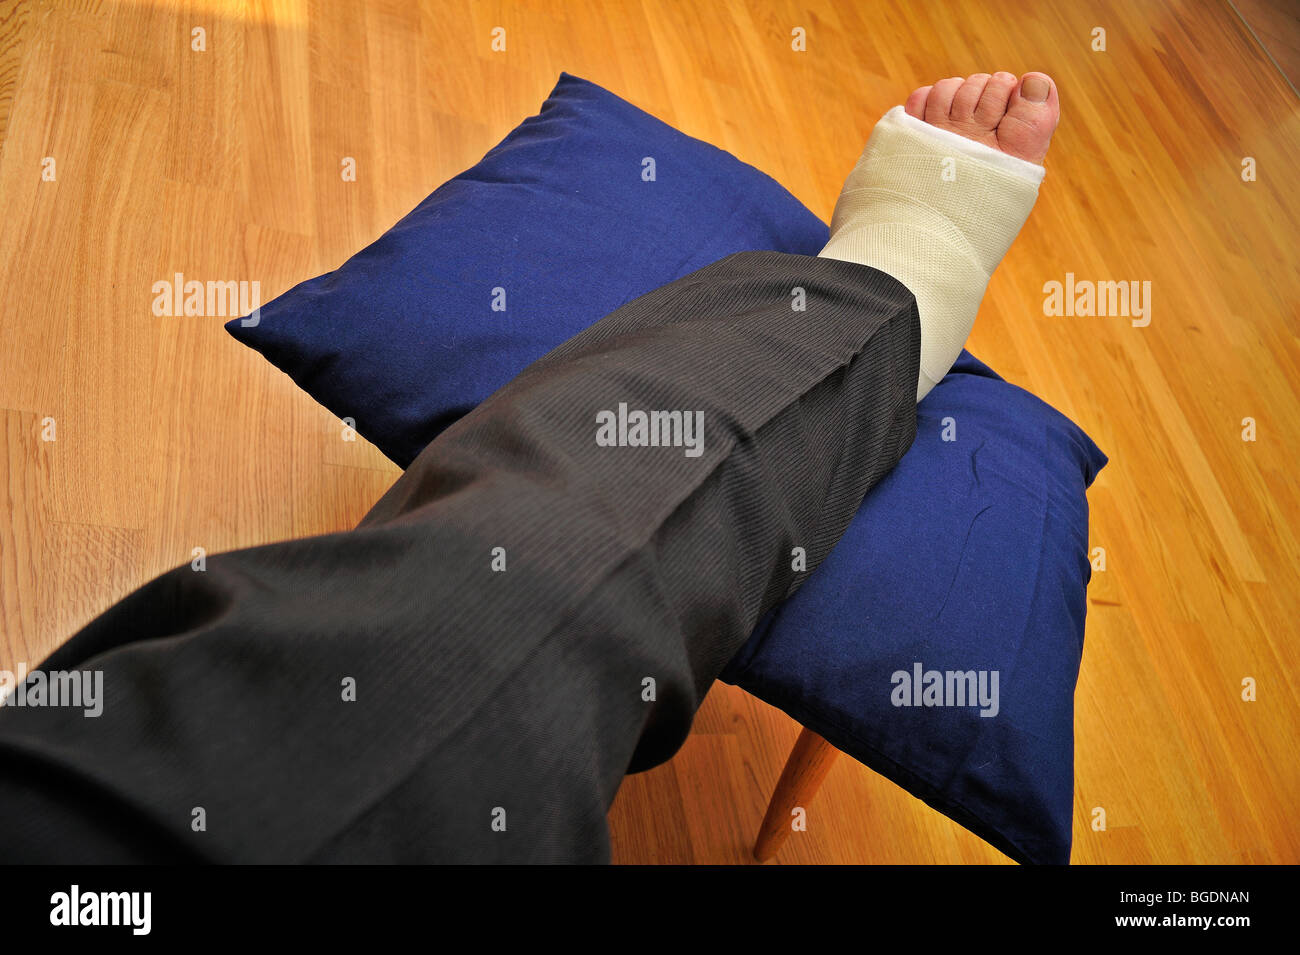 Détail d'une main d'homme jambe cassée dans un plâtre, reposant sur un coussin Banque D'Images